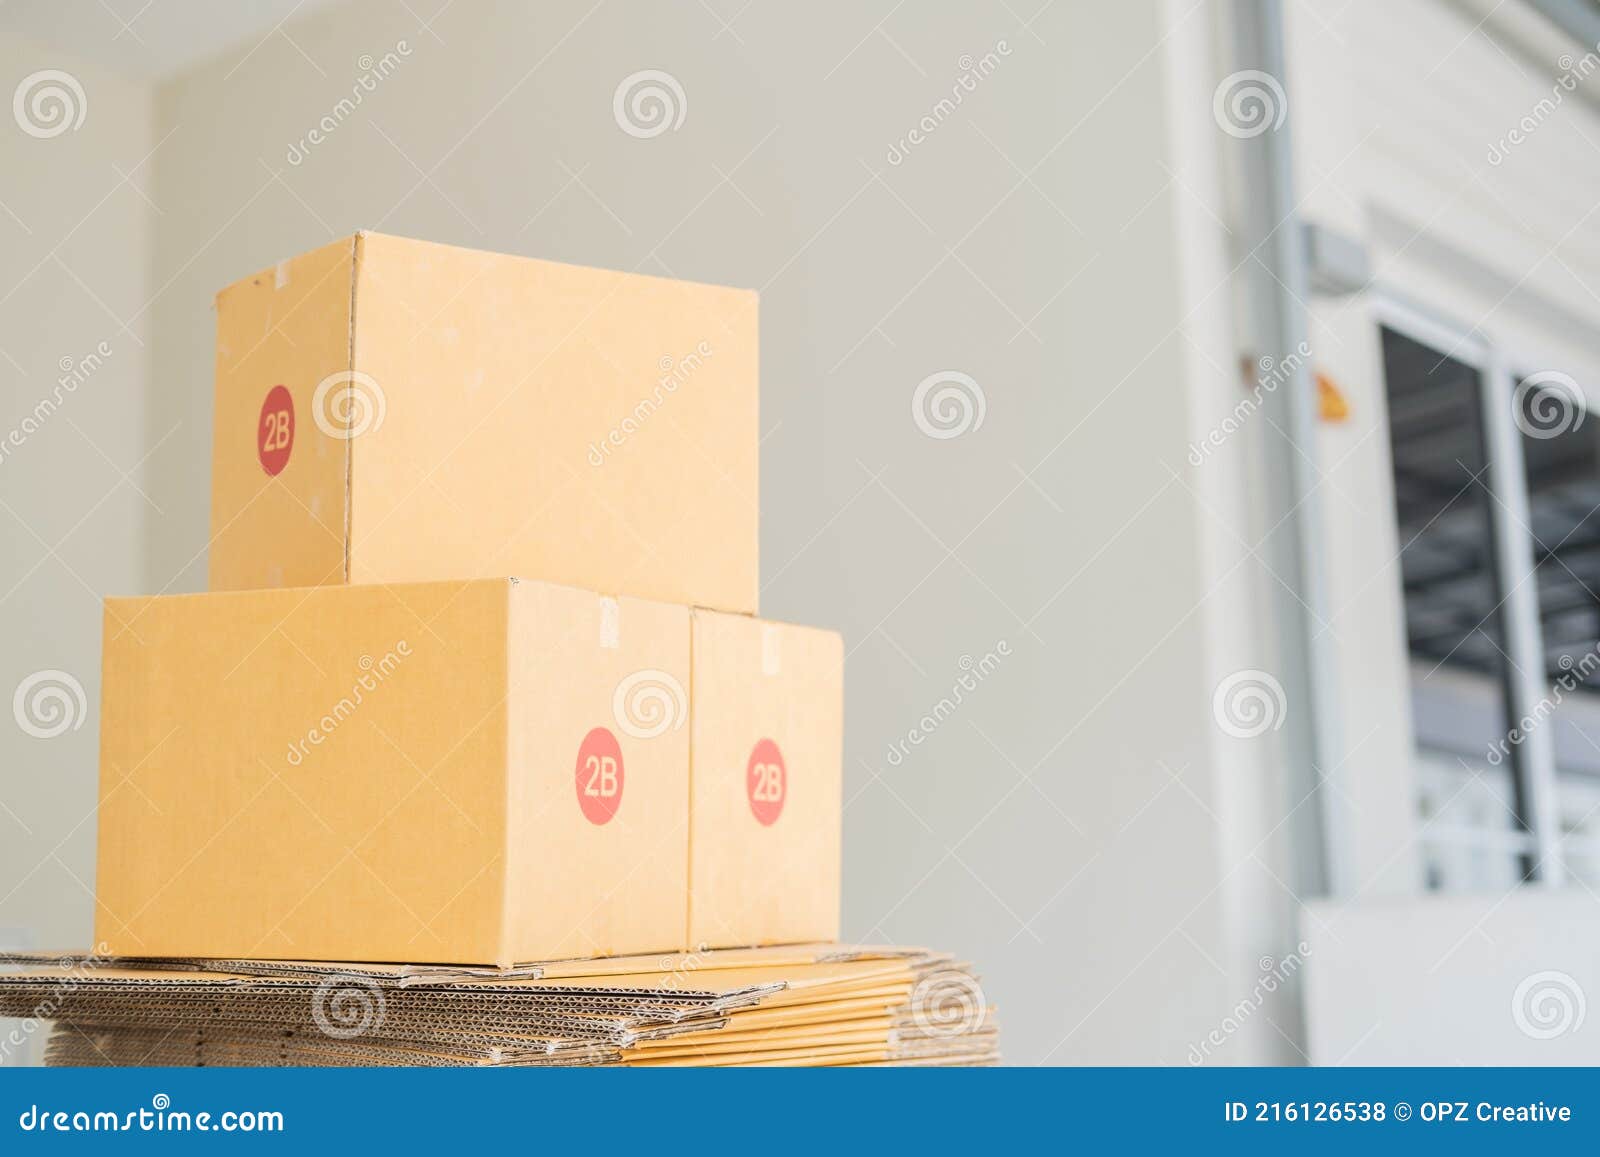 Verpackung Verpackung Verpackung Design Express Post Mockup Trage Zum  Verkauf Online Auf Bestellung Von Kunden Einkaufen Nach Haus Stockfoto -  Bild von hintergrund, geschäft: 216126538